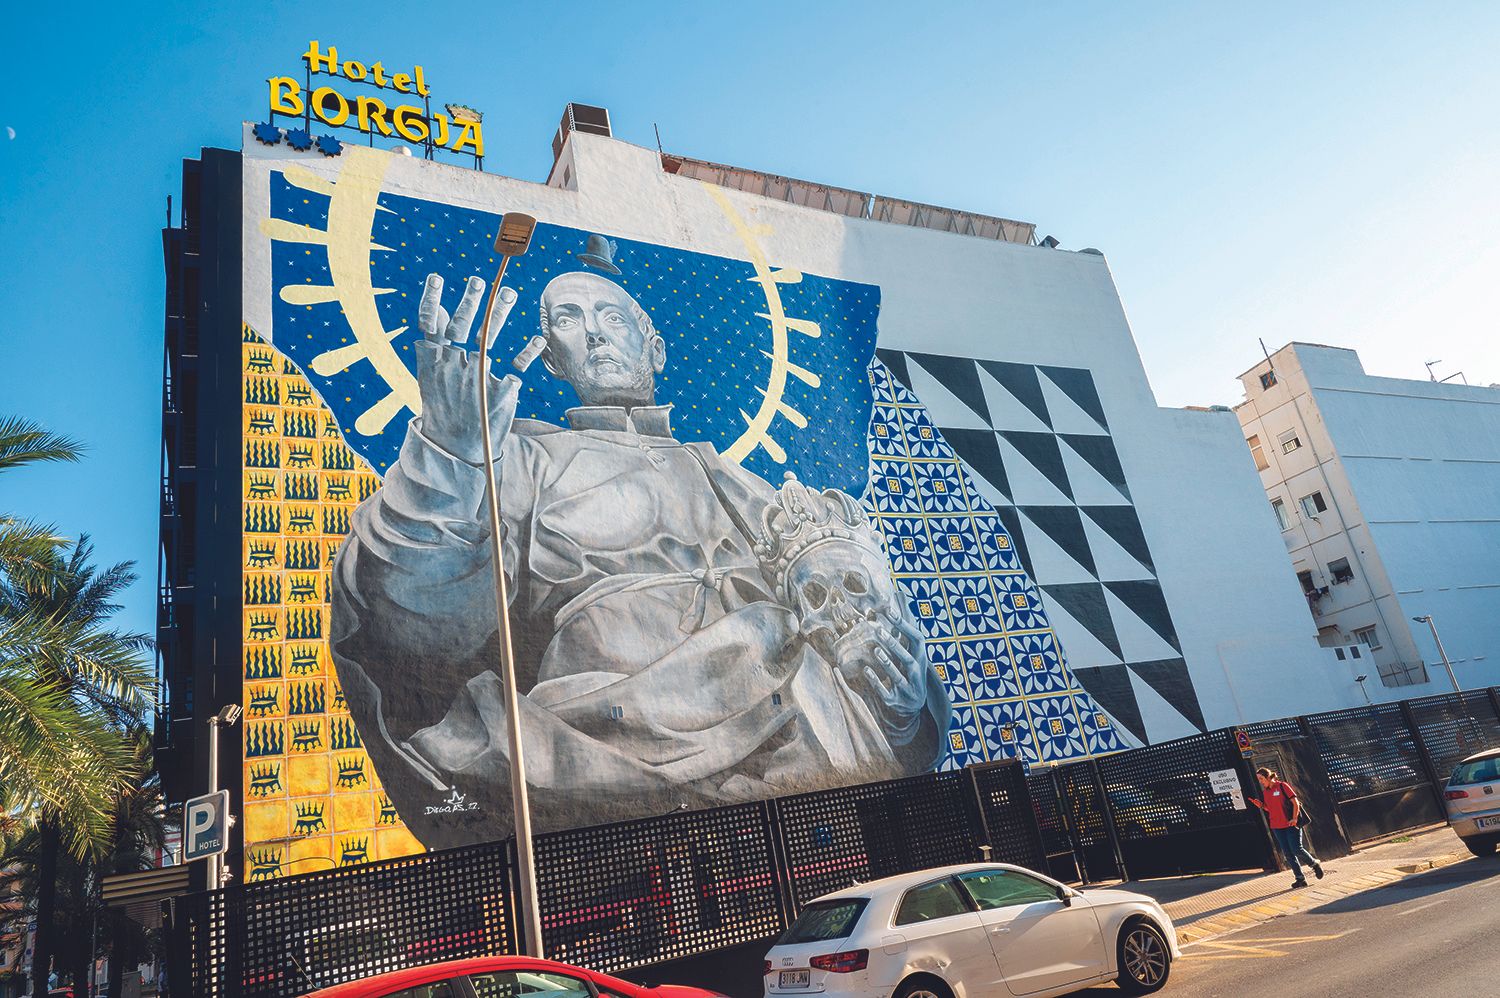 Grafiti de Francisco de Borja en la fachada del hotel Borgia, obra de Diego As.